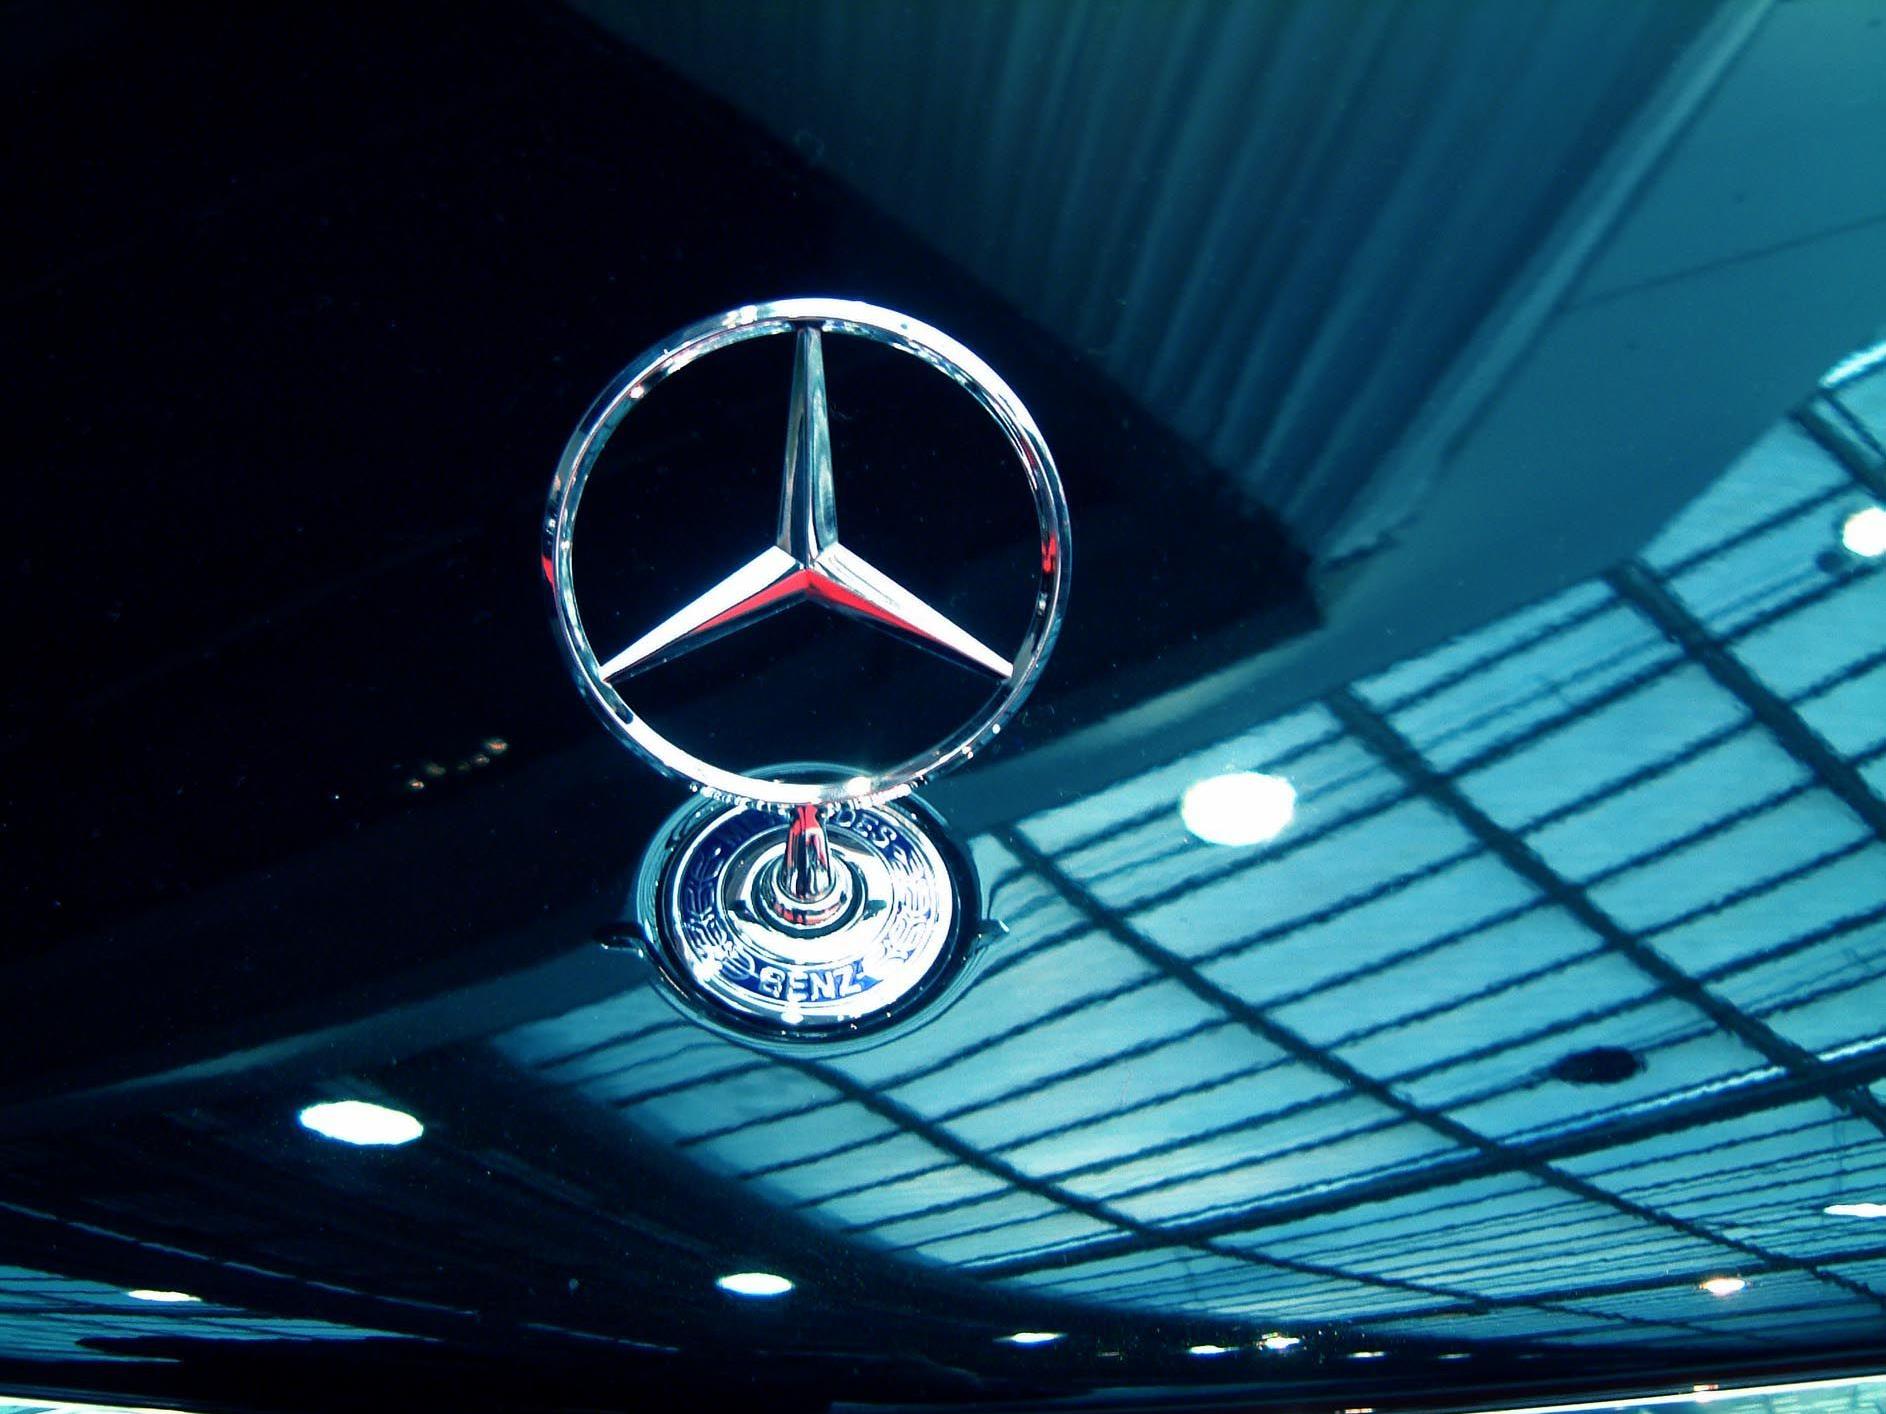 Ein hochwertiger Mercedes wurde in der Nacht aus dem Schauraum "gefahren".